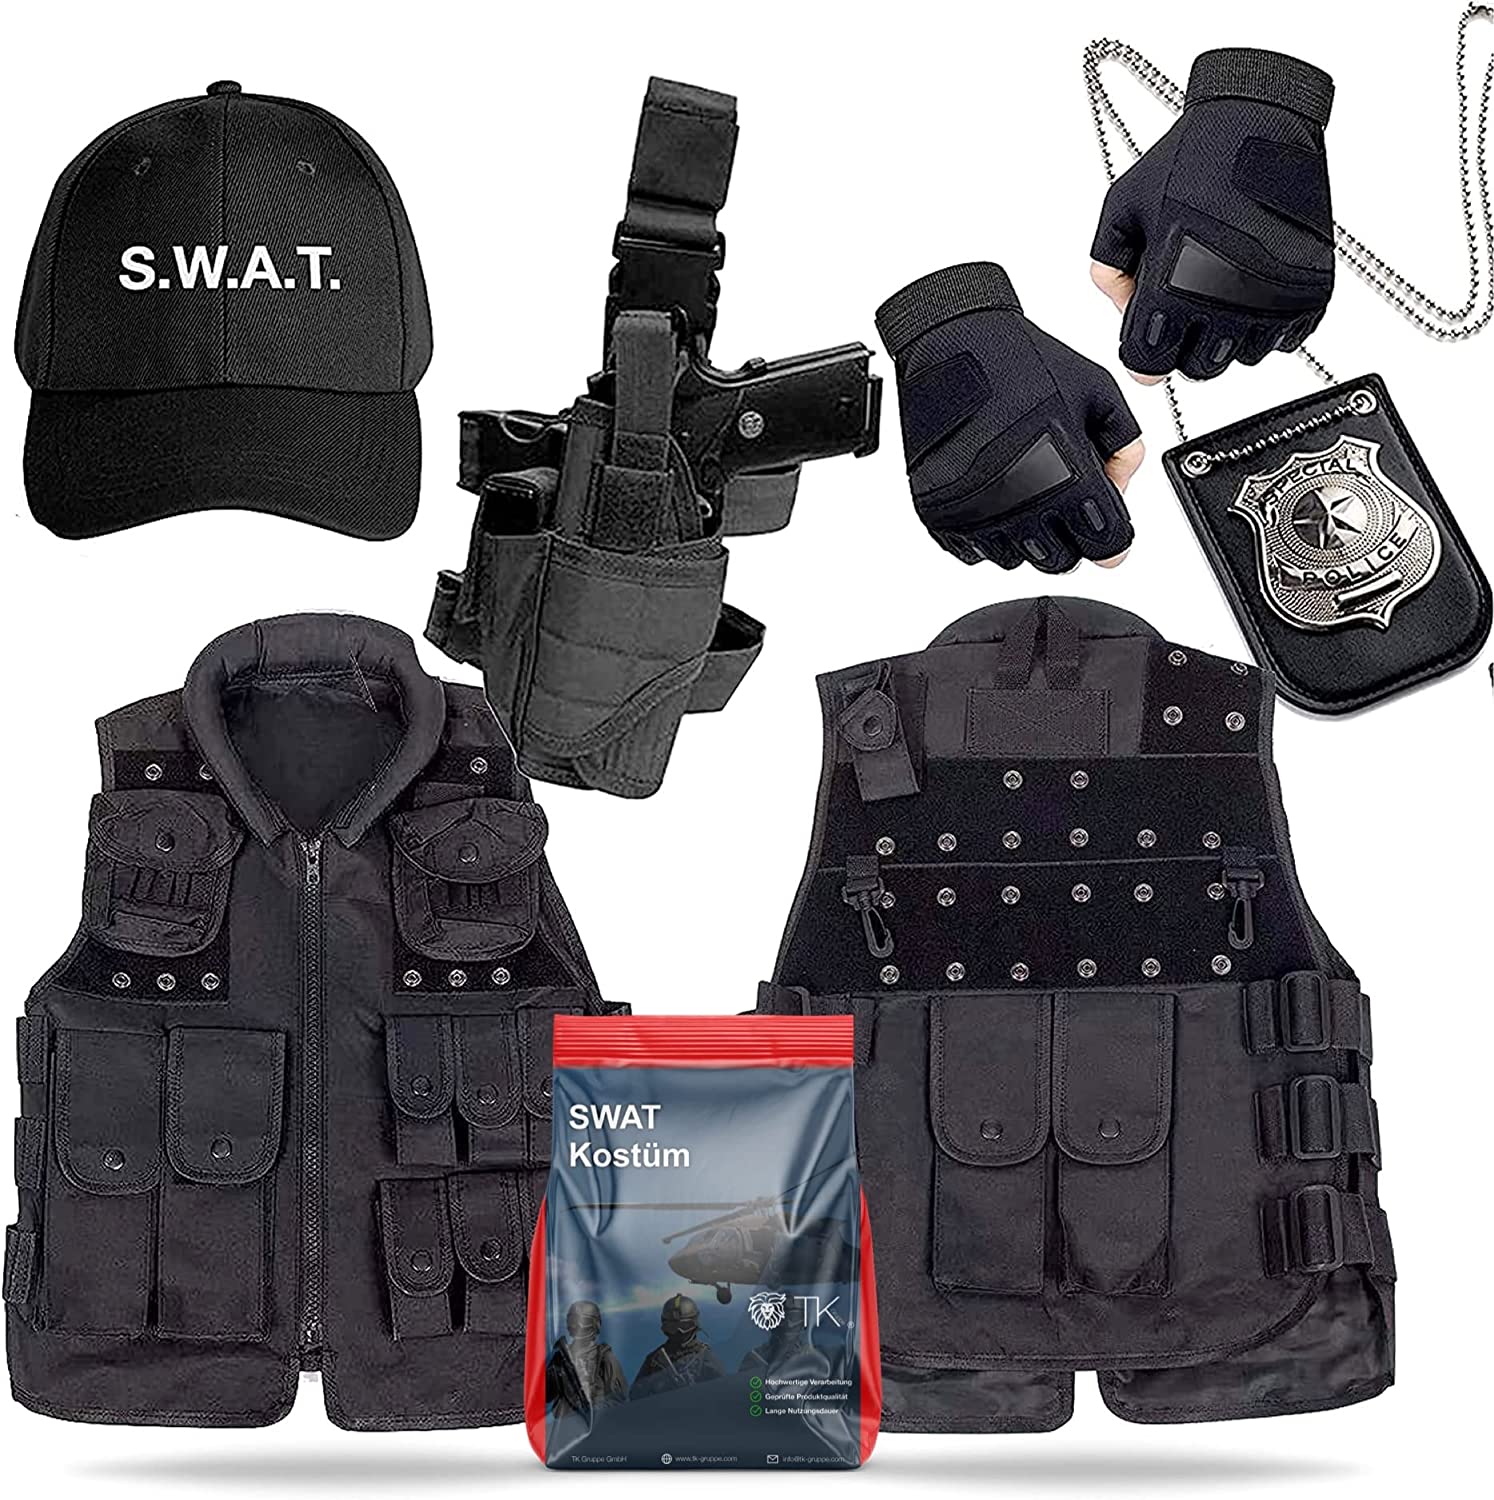 Schlüpfen Sie in die Rolle eines SWAT-Teammitglieds